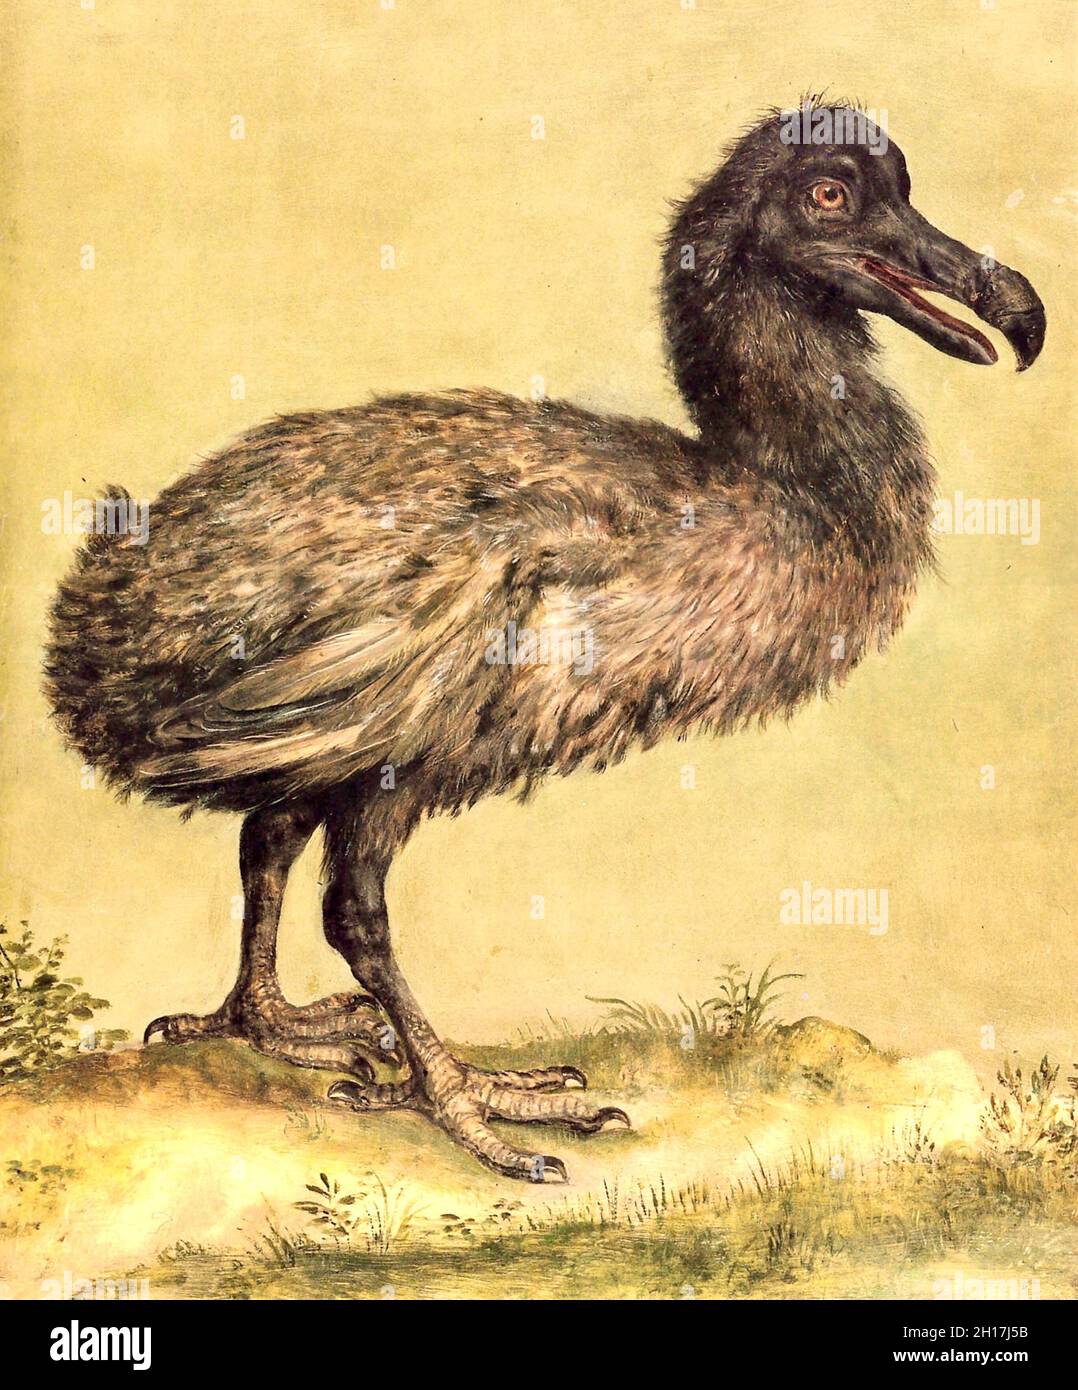 Dodo - Jacob Hoefnagel - Illustrazione di un dodo nella menagerie dell'imperatore Rudolph II a Praga - 1602 Foto Stock